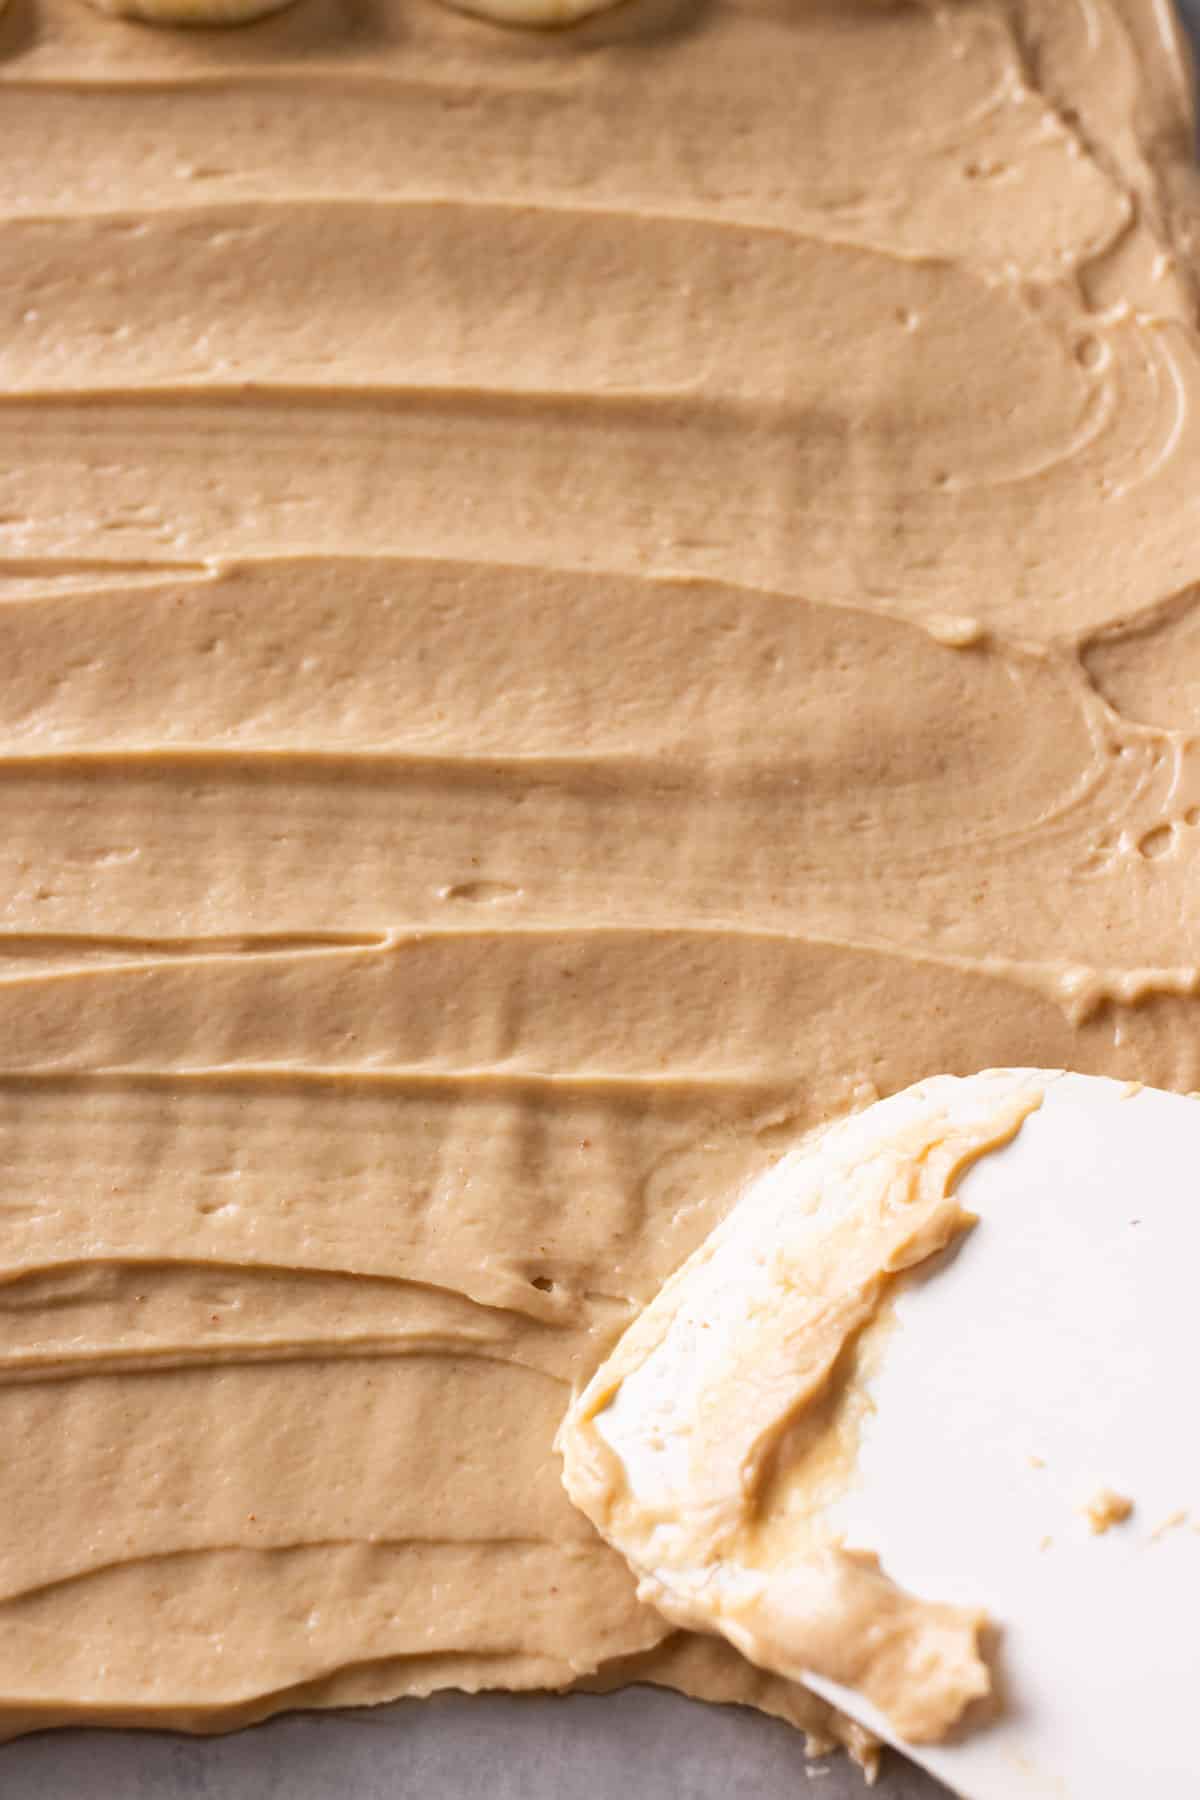 Peanut butter flavored Greek yogurt is spread in a baking tray.